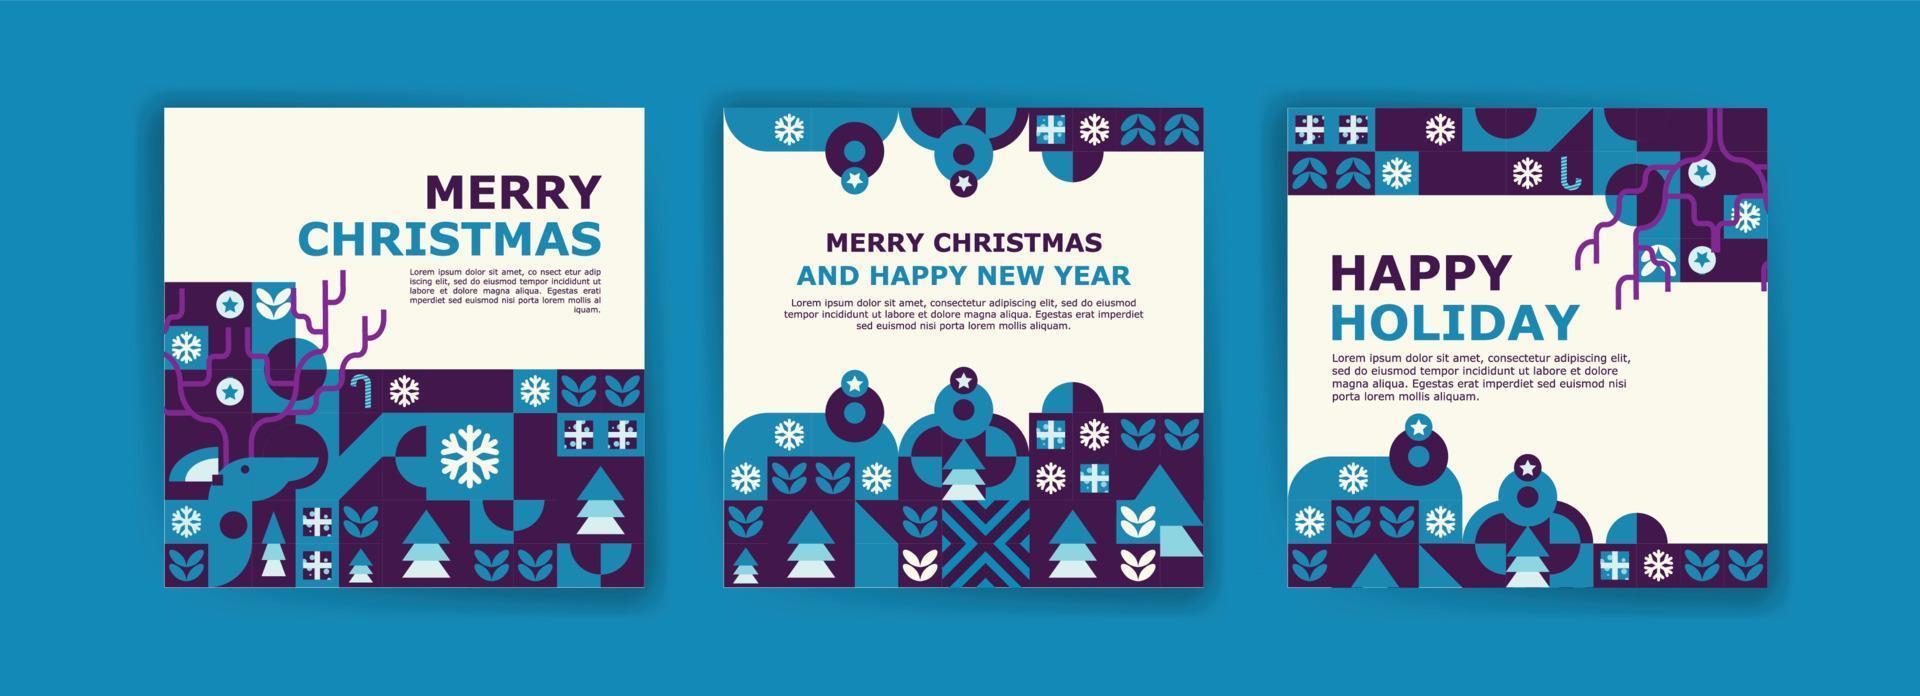 modelo de postagem de mídia social para feliz natal e ano novo. cartaz de padrão geométrico colorido para feliz Natal e ano novo. vetor